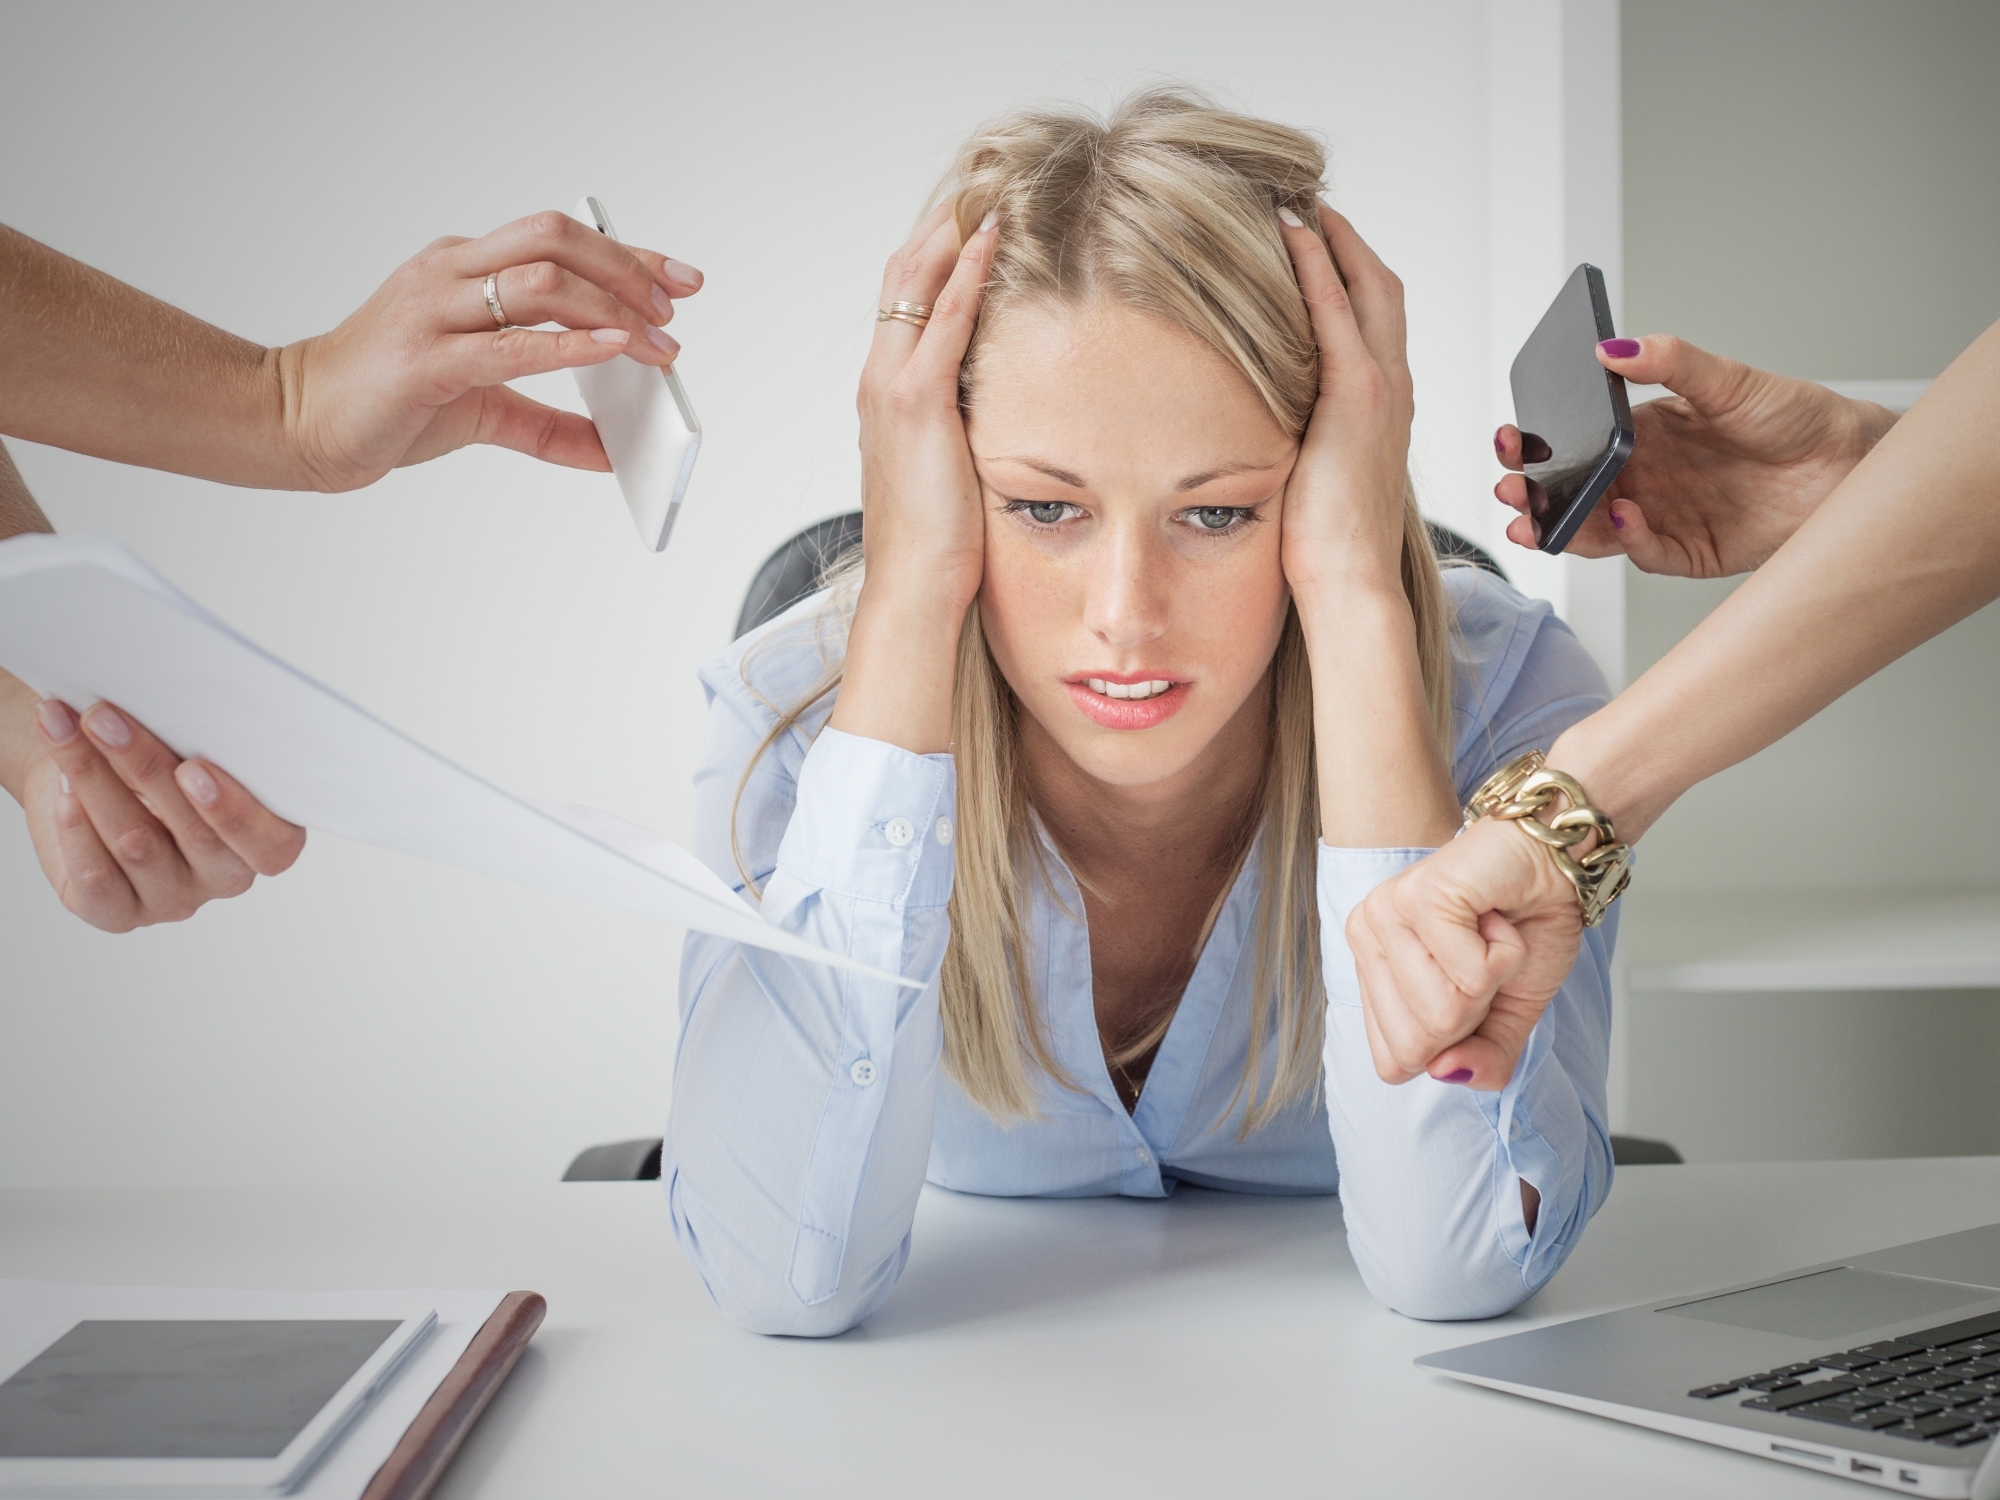 Environ 40% des employés se sentent souvent ou très souvent stressés par leur travail. (illustration)